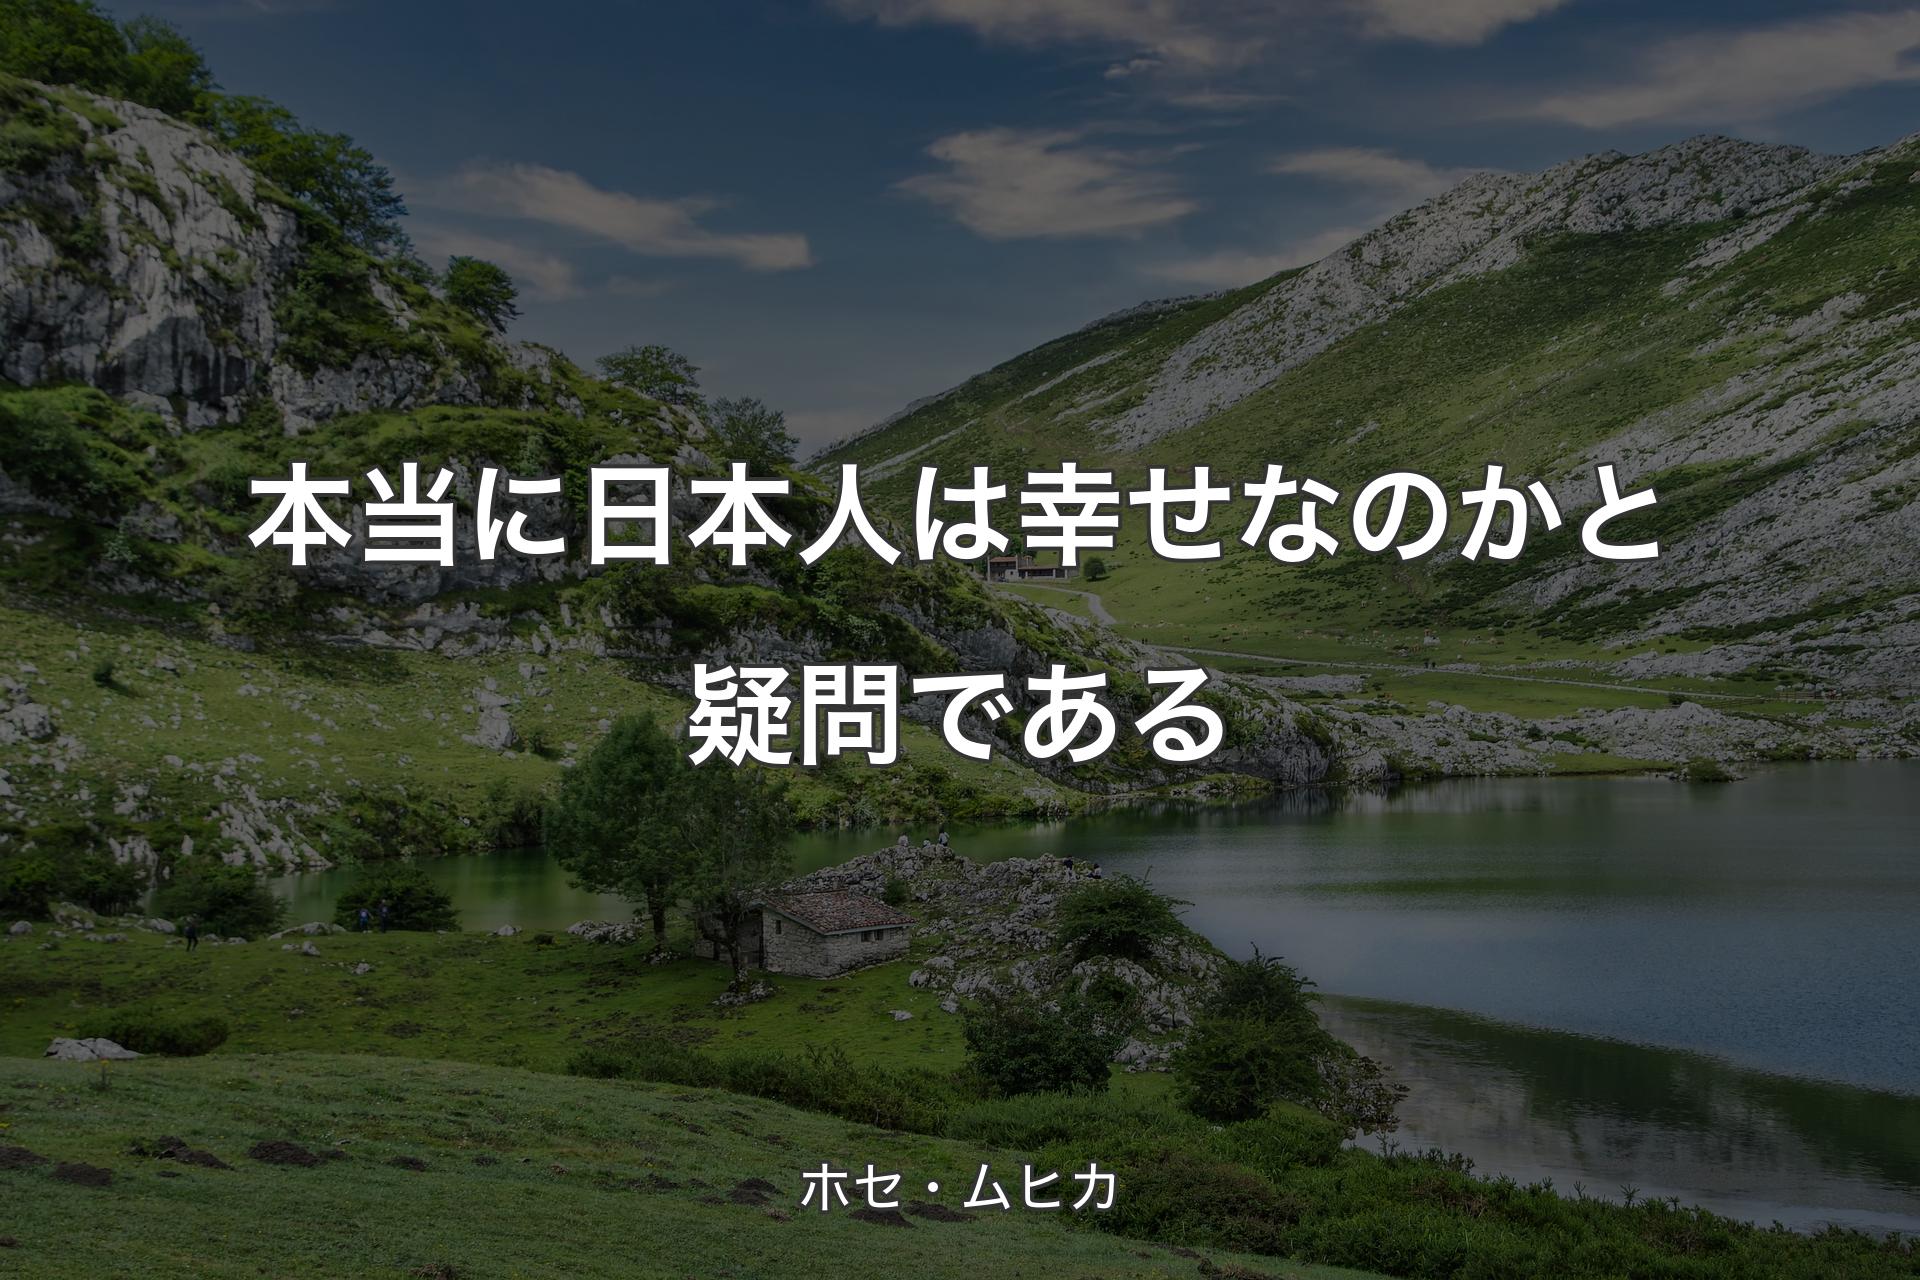 【背景1】本当に日本人は幸せなのかと疑問である - ホセ・ムヒカ